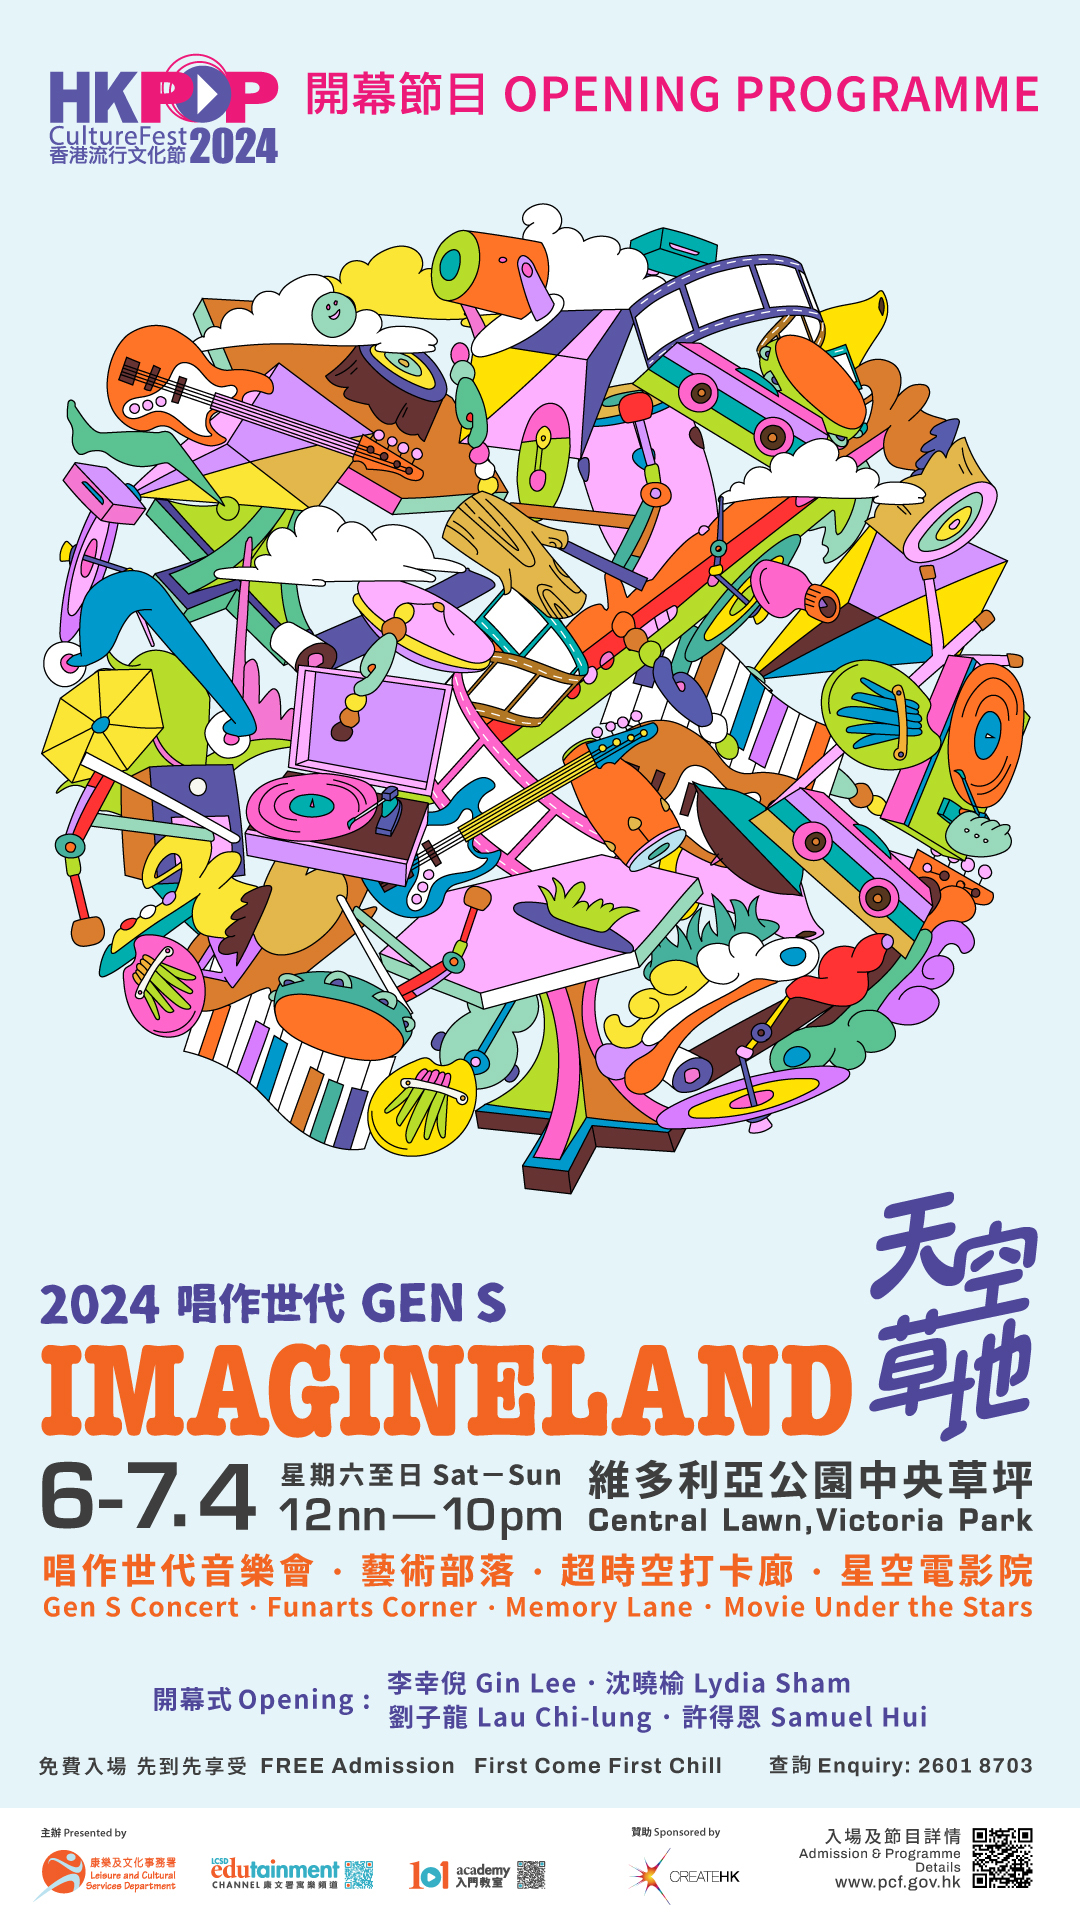 香港流行文化节2024 - 4月6至7日开幕节目《天空草地》免费入场；其他节目举行至2025年2月